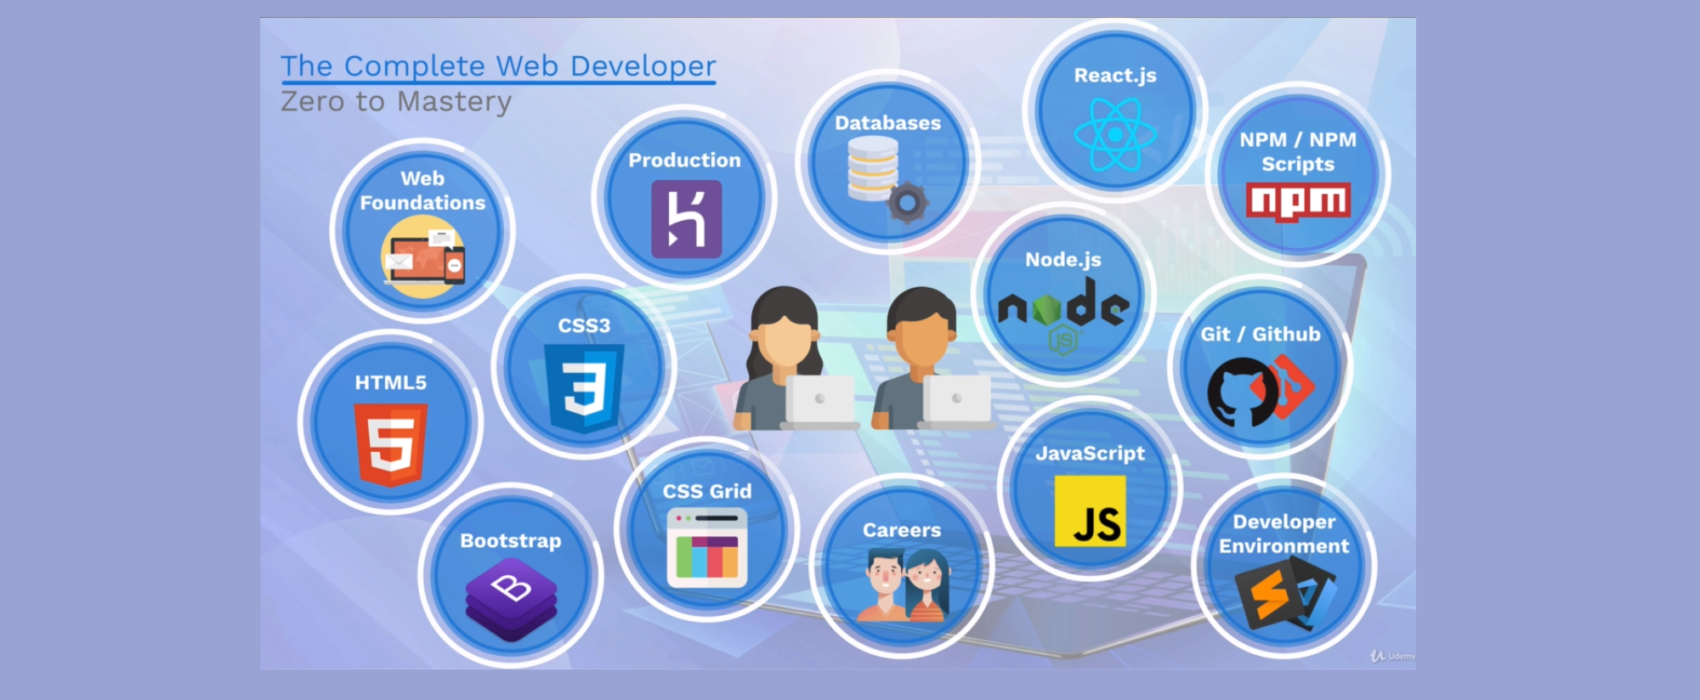 The Complete Web Developer Roadmap